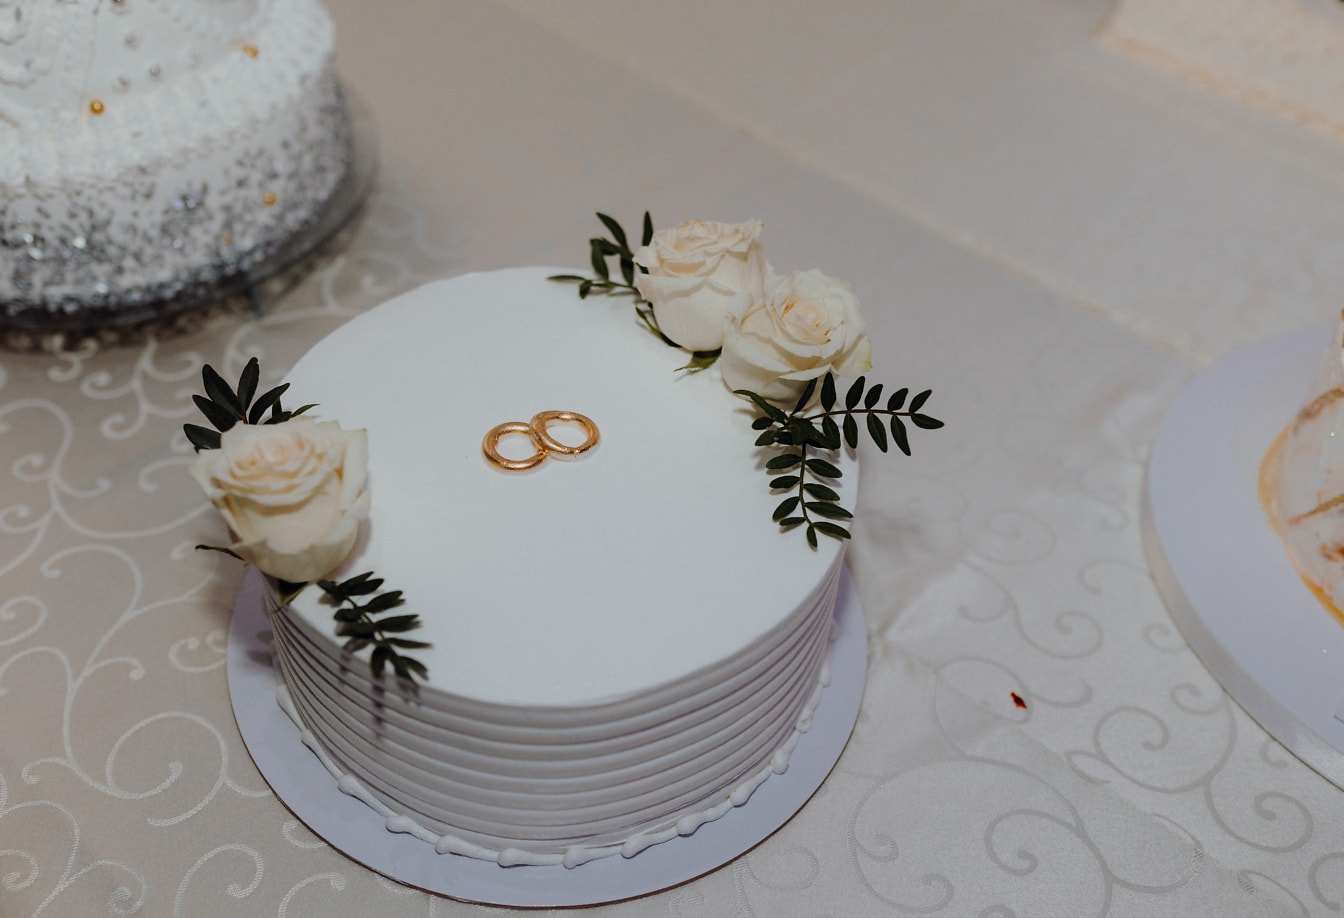 Biela svadobná torta so zlatými snubnými prsteňmi na vrchu a bielymi ružami ako ozdobou